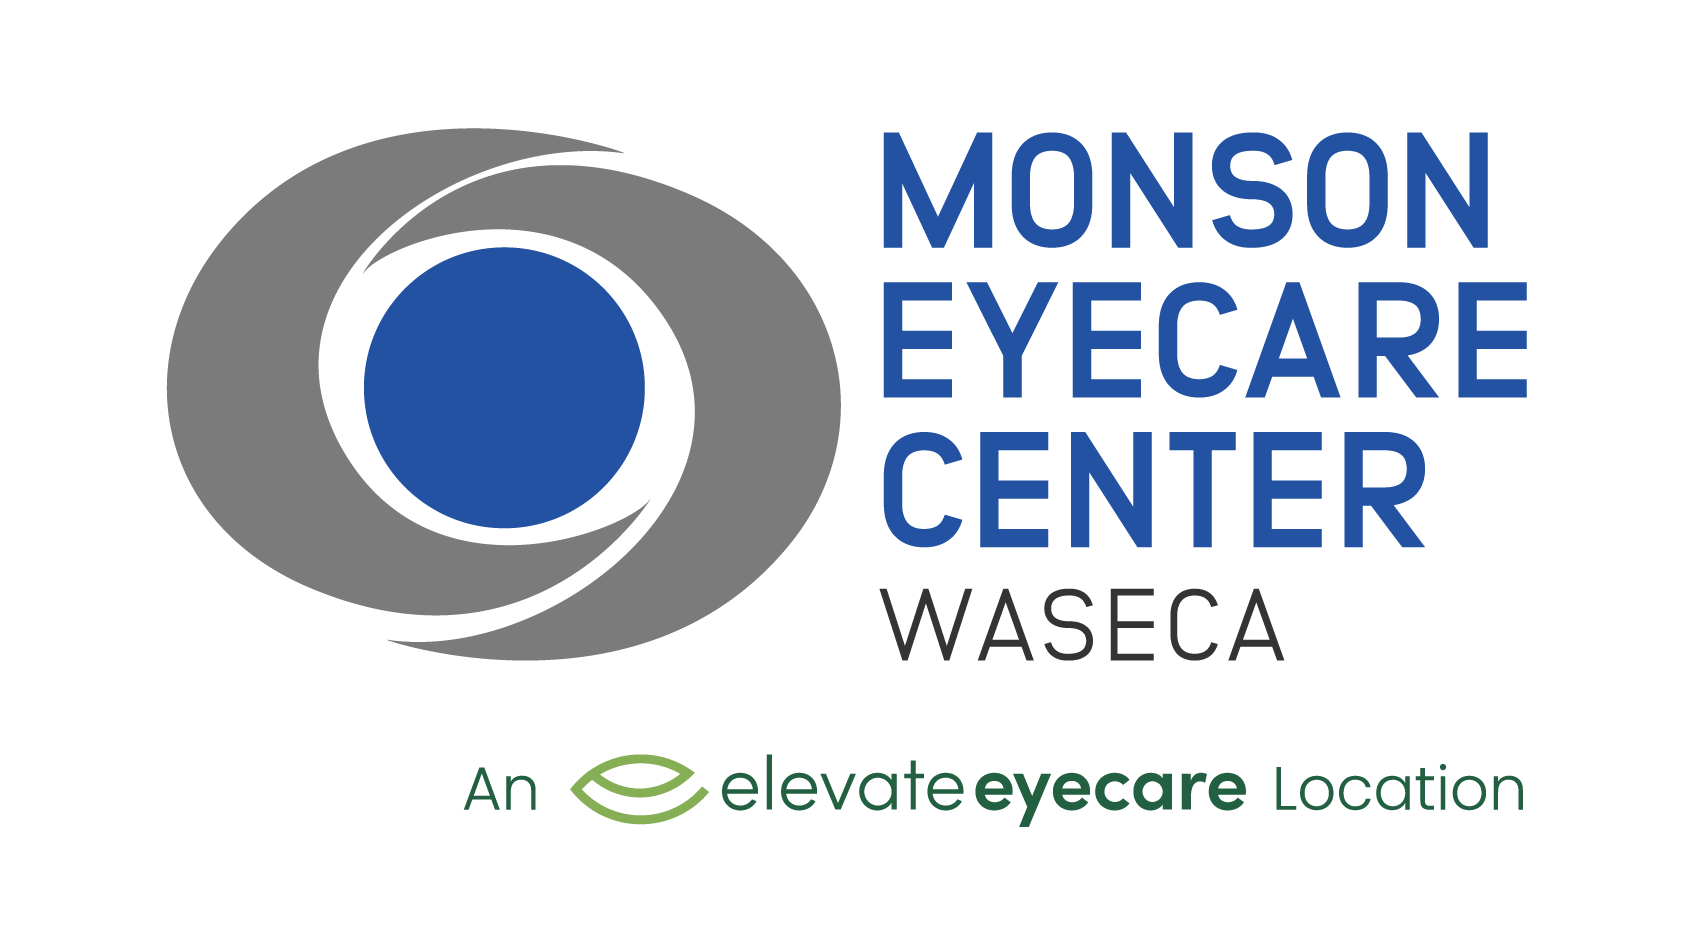 Monson Eyecare Center Waseca